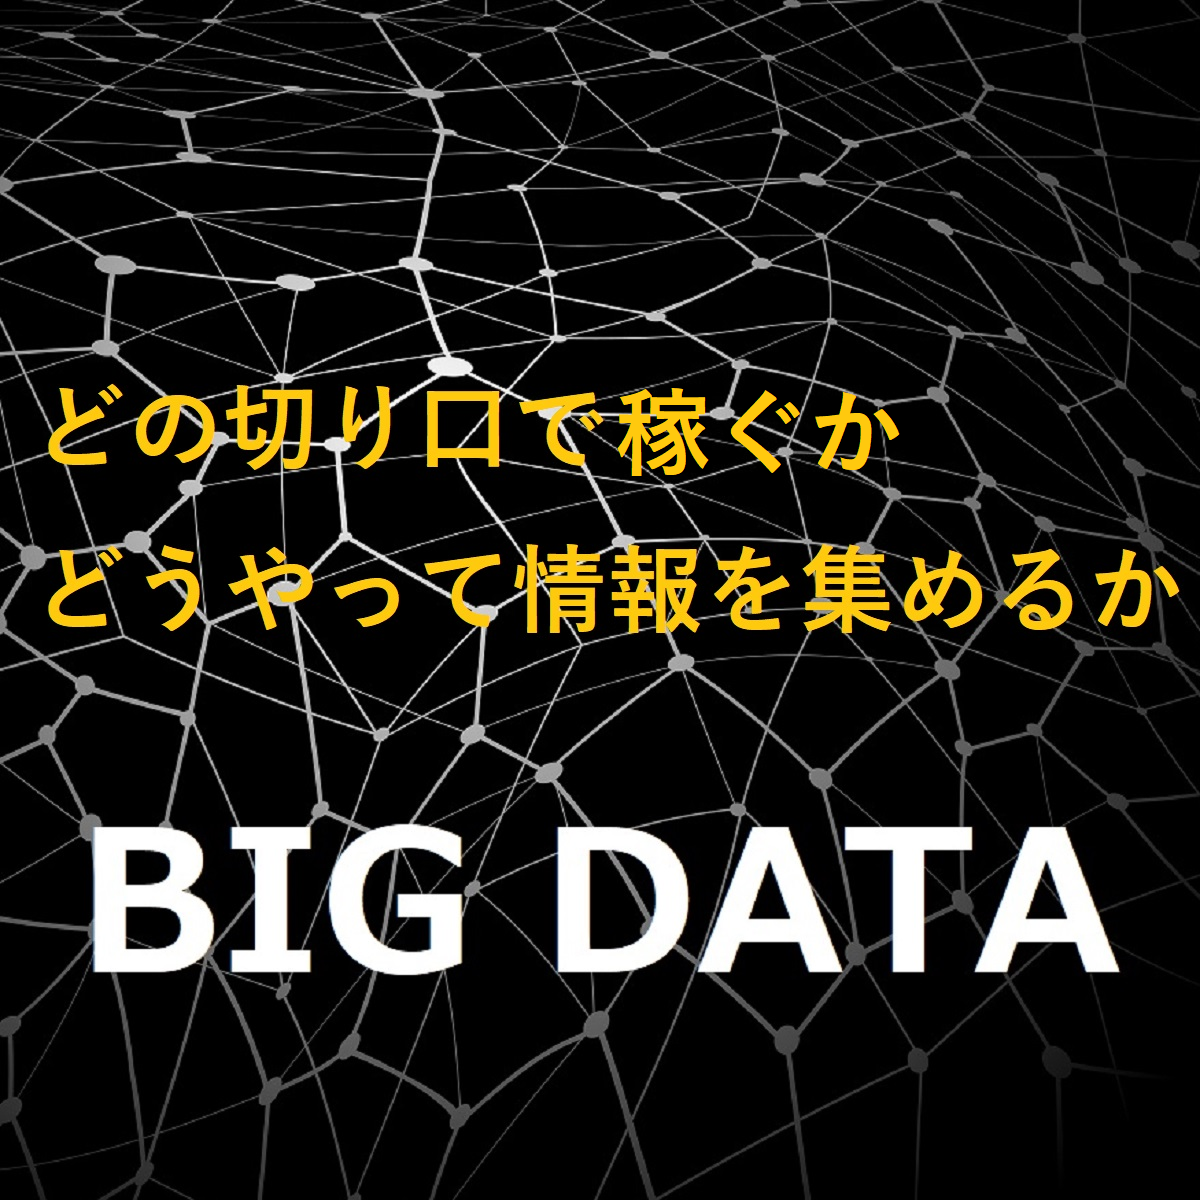 「どの切り口で稼ぐか、どうやって情報を集めるか、BIG DATA」と書かれたサムネイル。